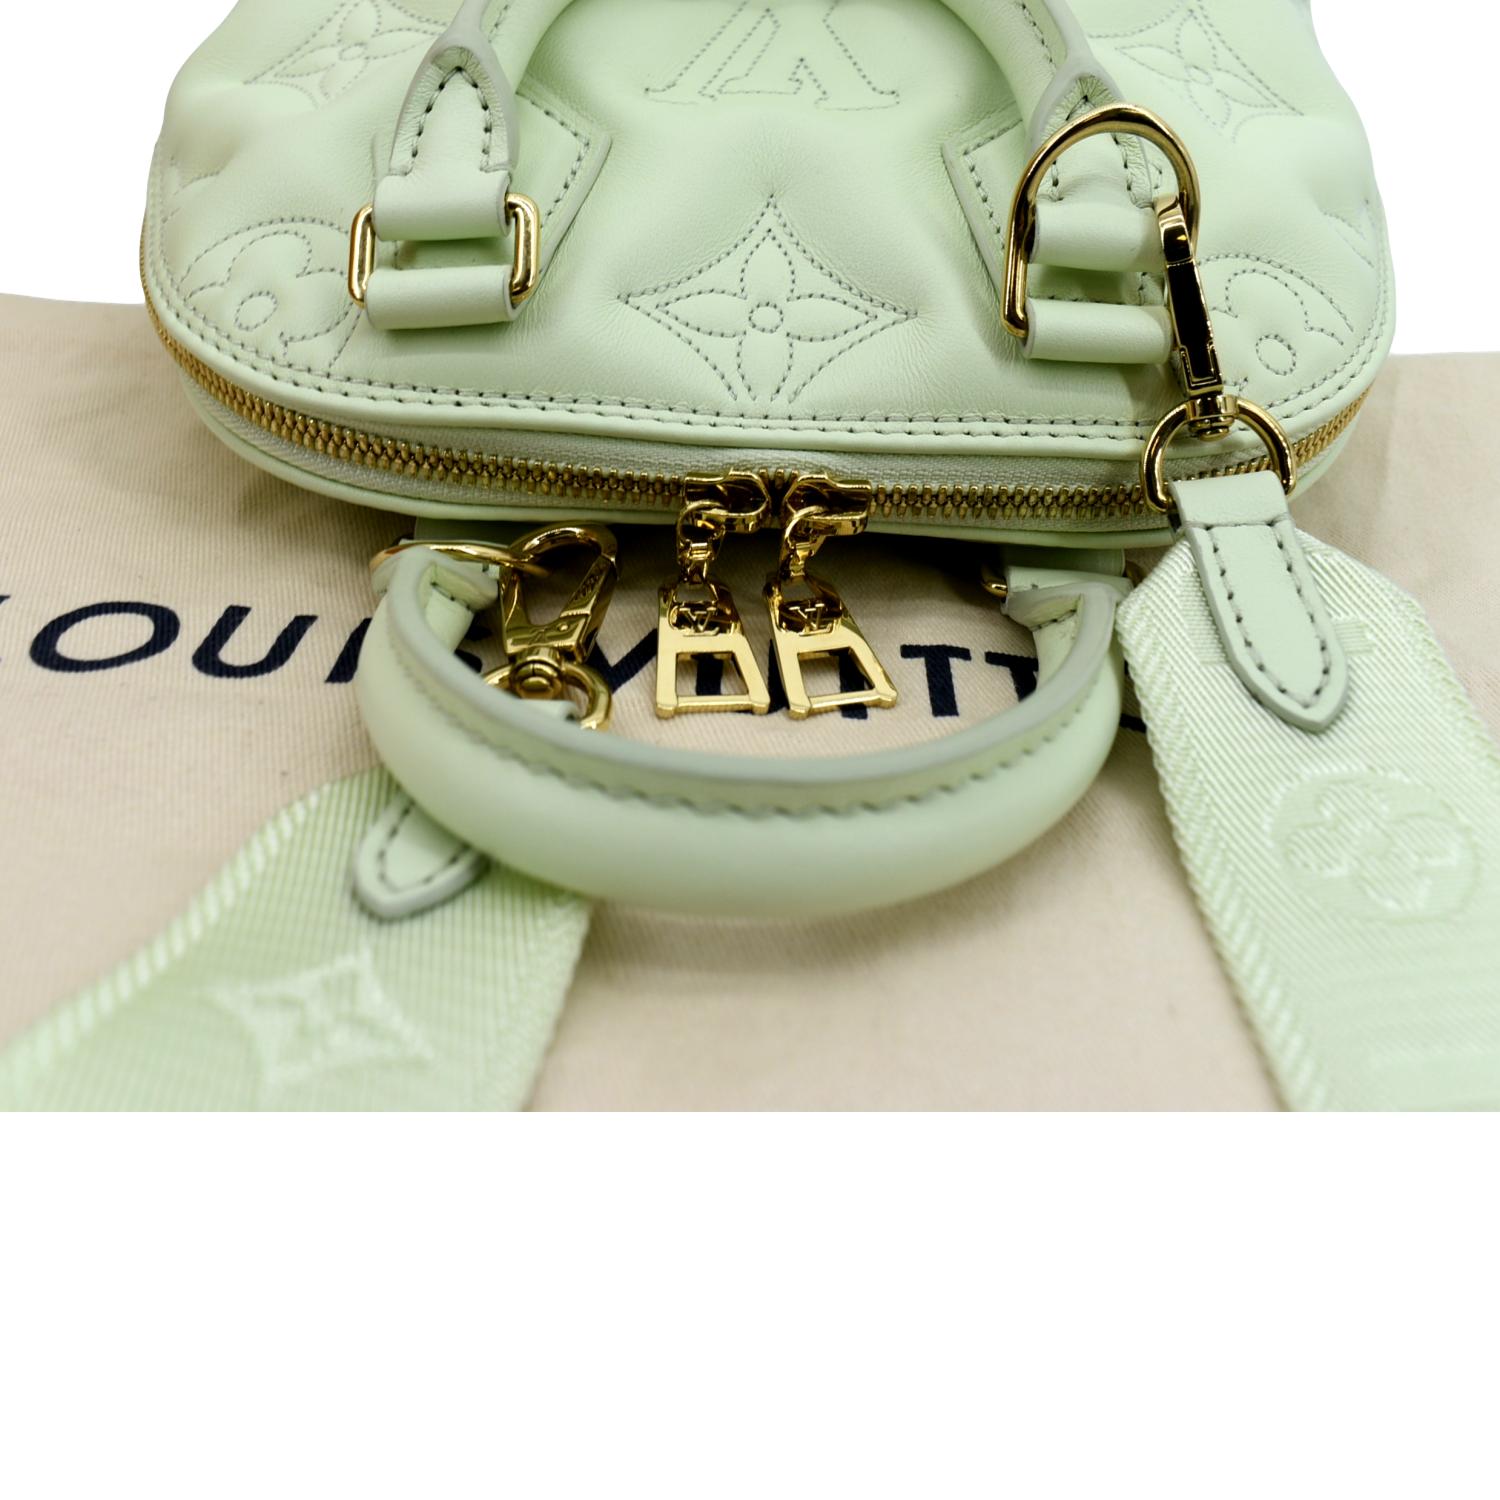 Louis Vuitton Alma BB Bubblegram Leather Satchel Bag